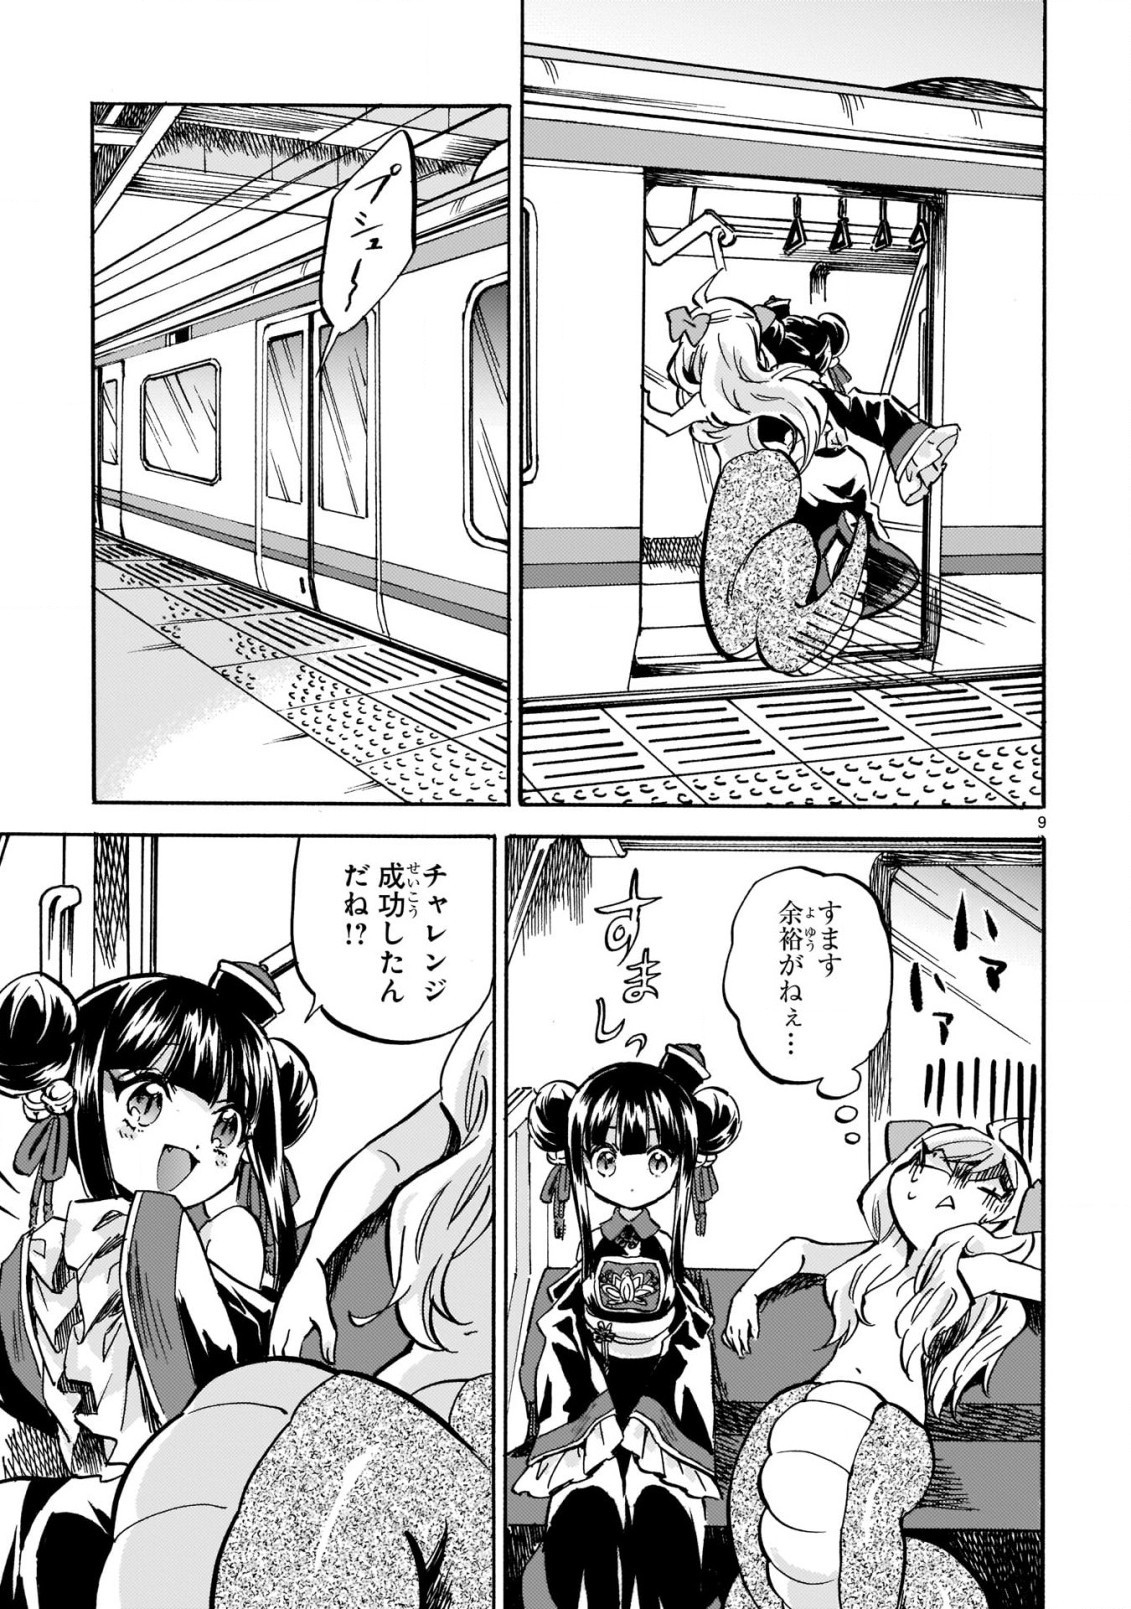 Jashin-chan Dropkick - Chapter 211 - Page 9